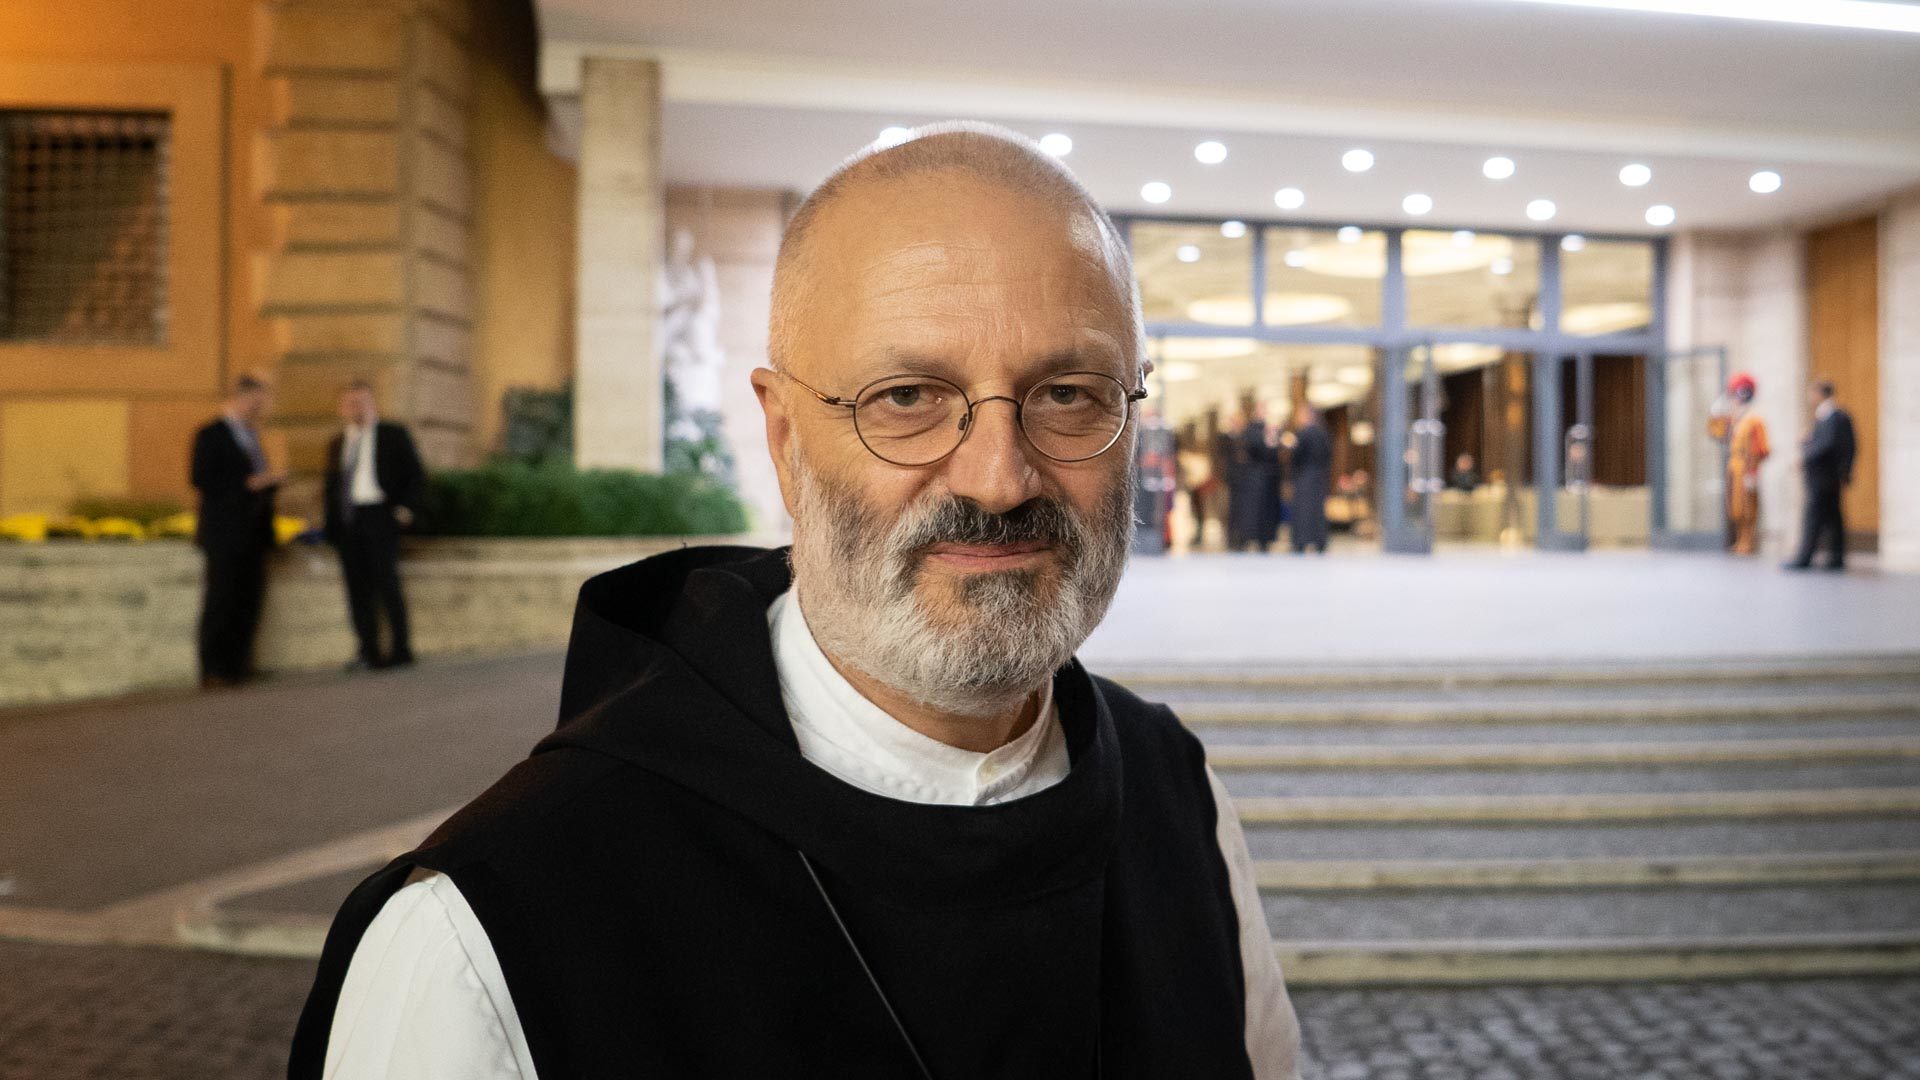 Don Mauro-Giuseppe Lepori participe au synode en tant que membre élu par l’Union des supérieurs généraux | © Pierre Pistoletti